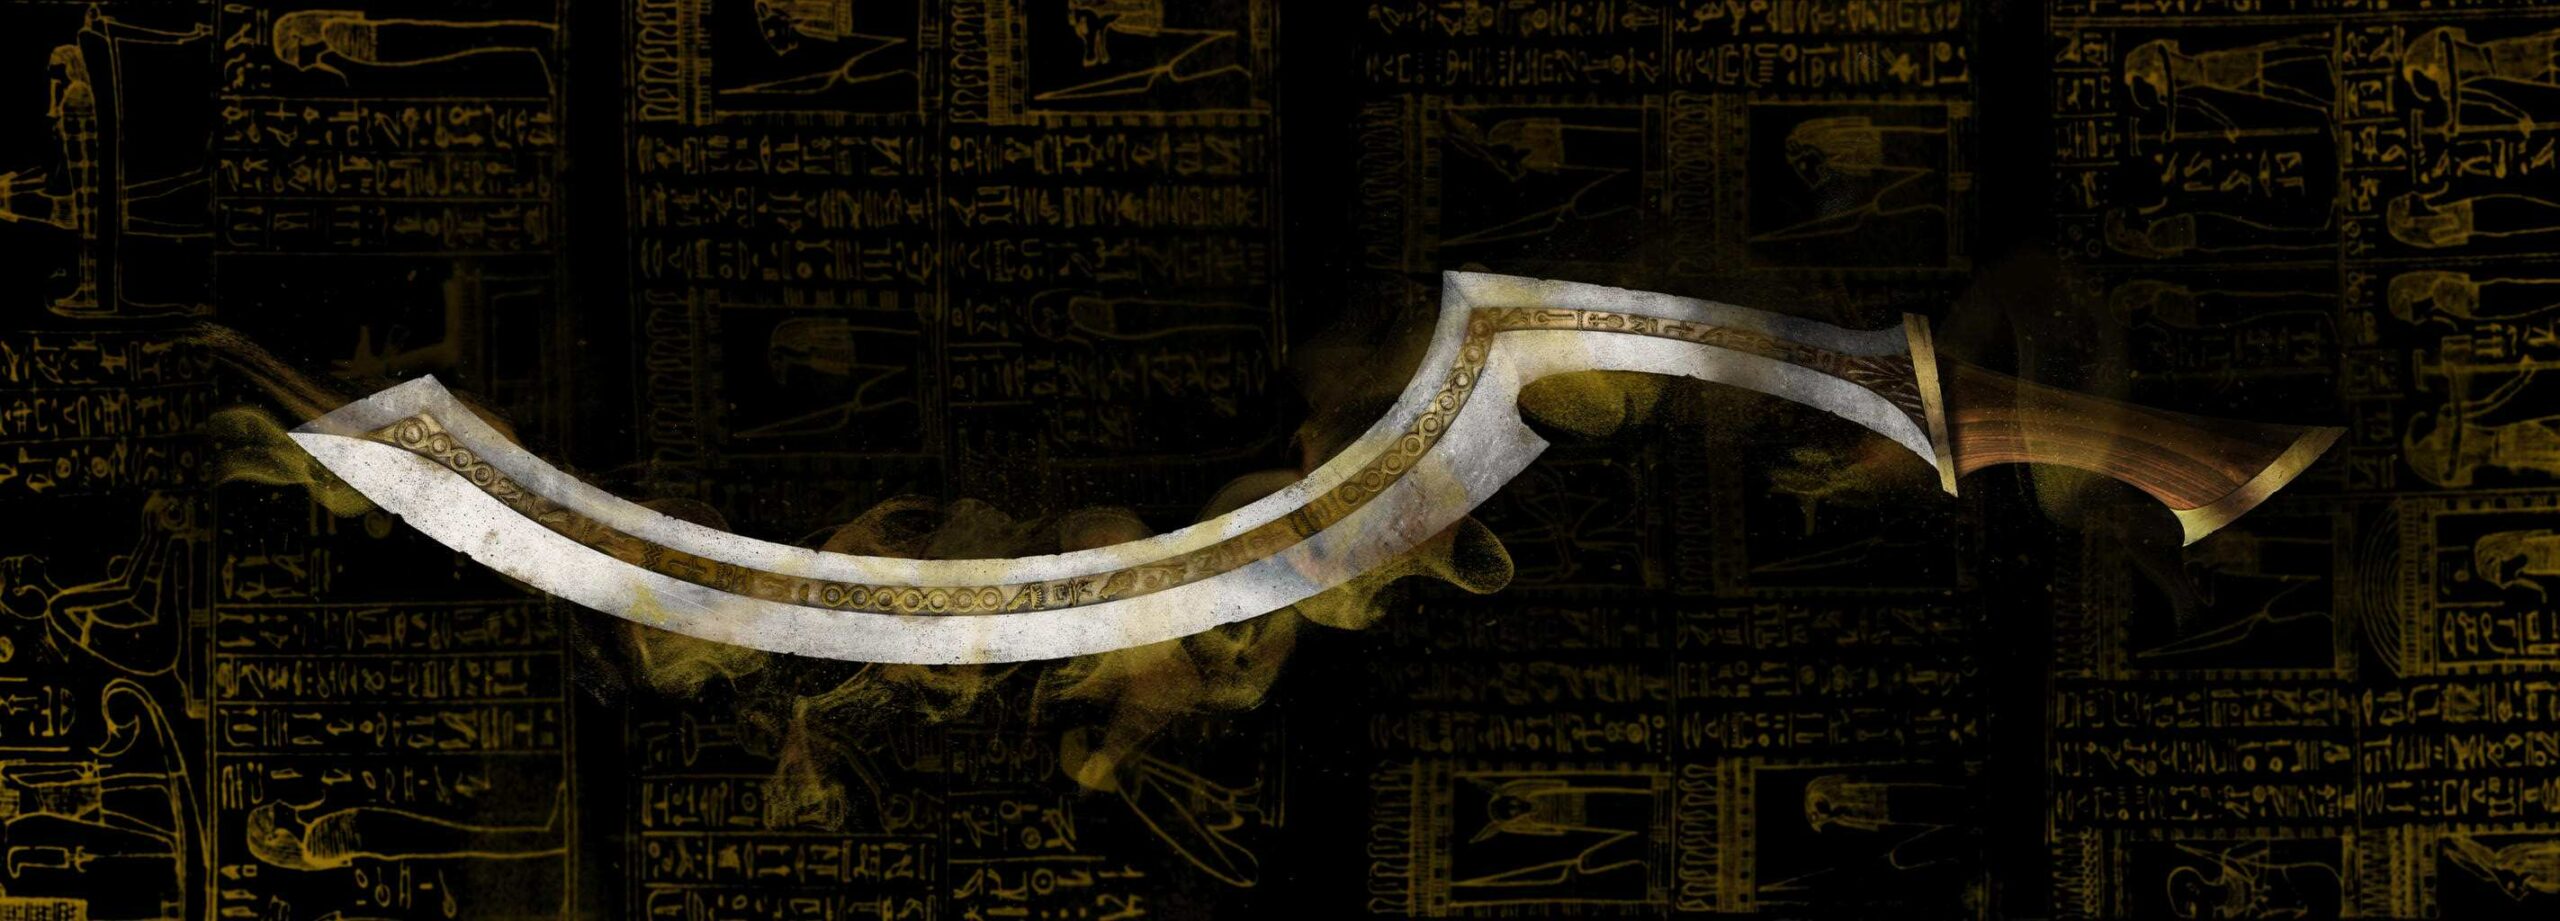 ดาบโคเปช: อาวุธสัญลักษณ์ที่สร้างประวัติศาสตร์อียิปต์โบราณ 2